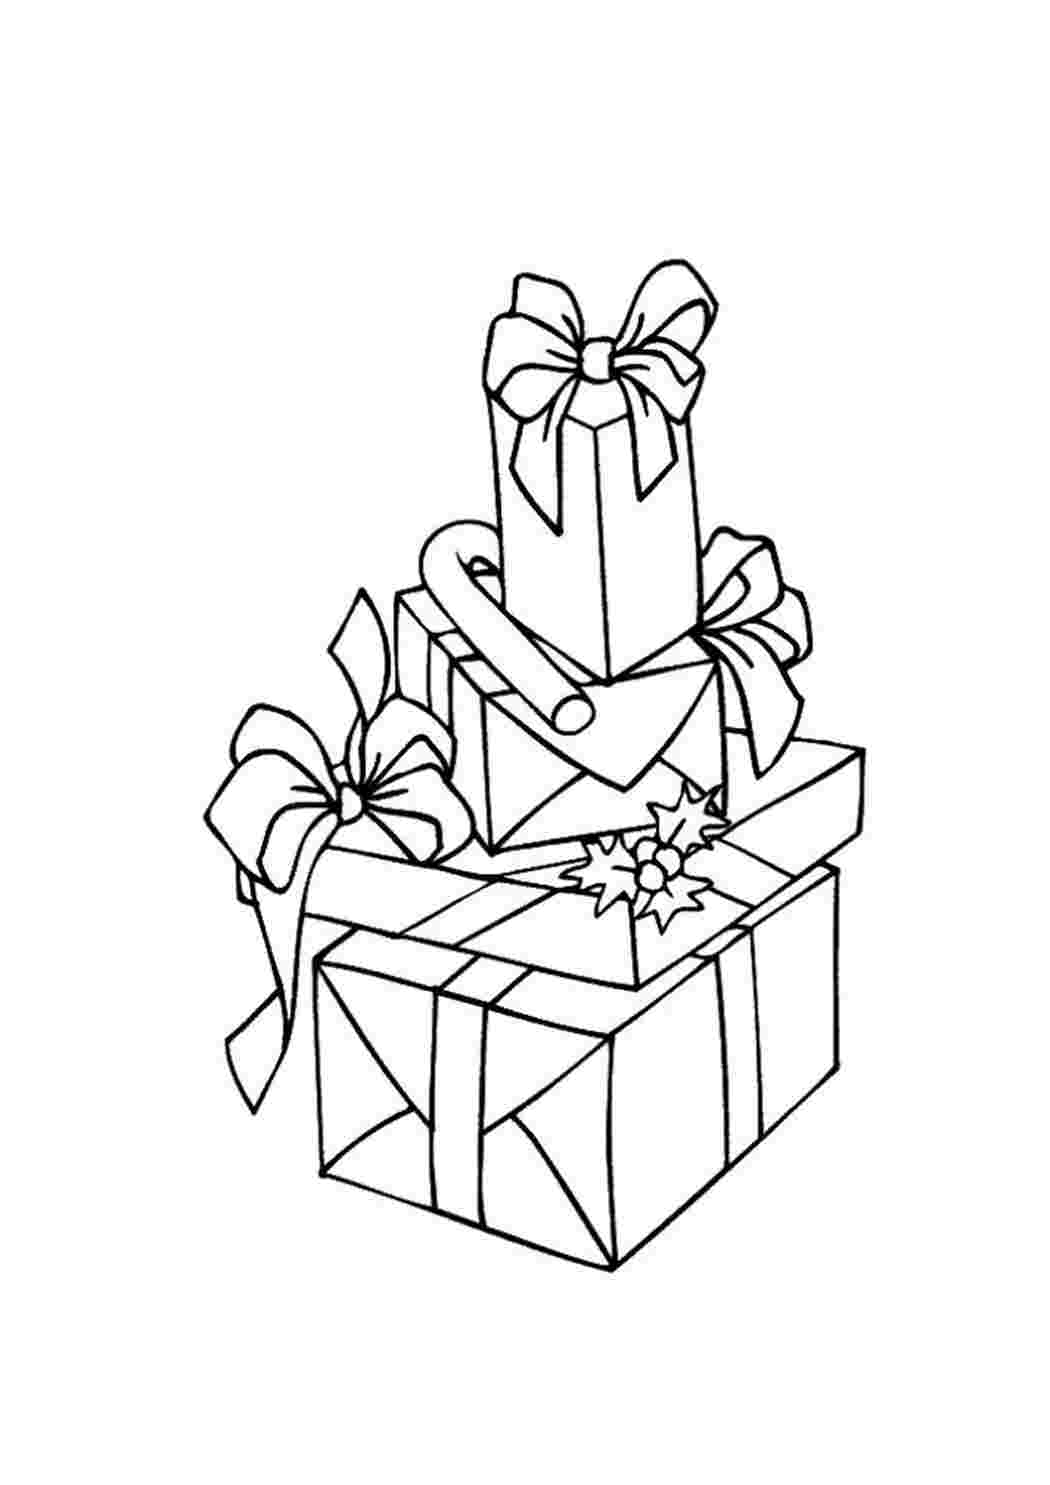 Раскраска новогодняя Подарки Деда Мороза, 12 стр - купить в интернет-магазине Novex